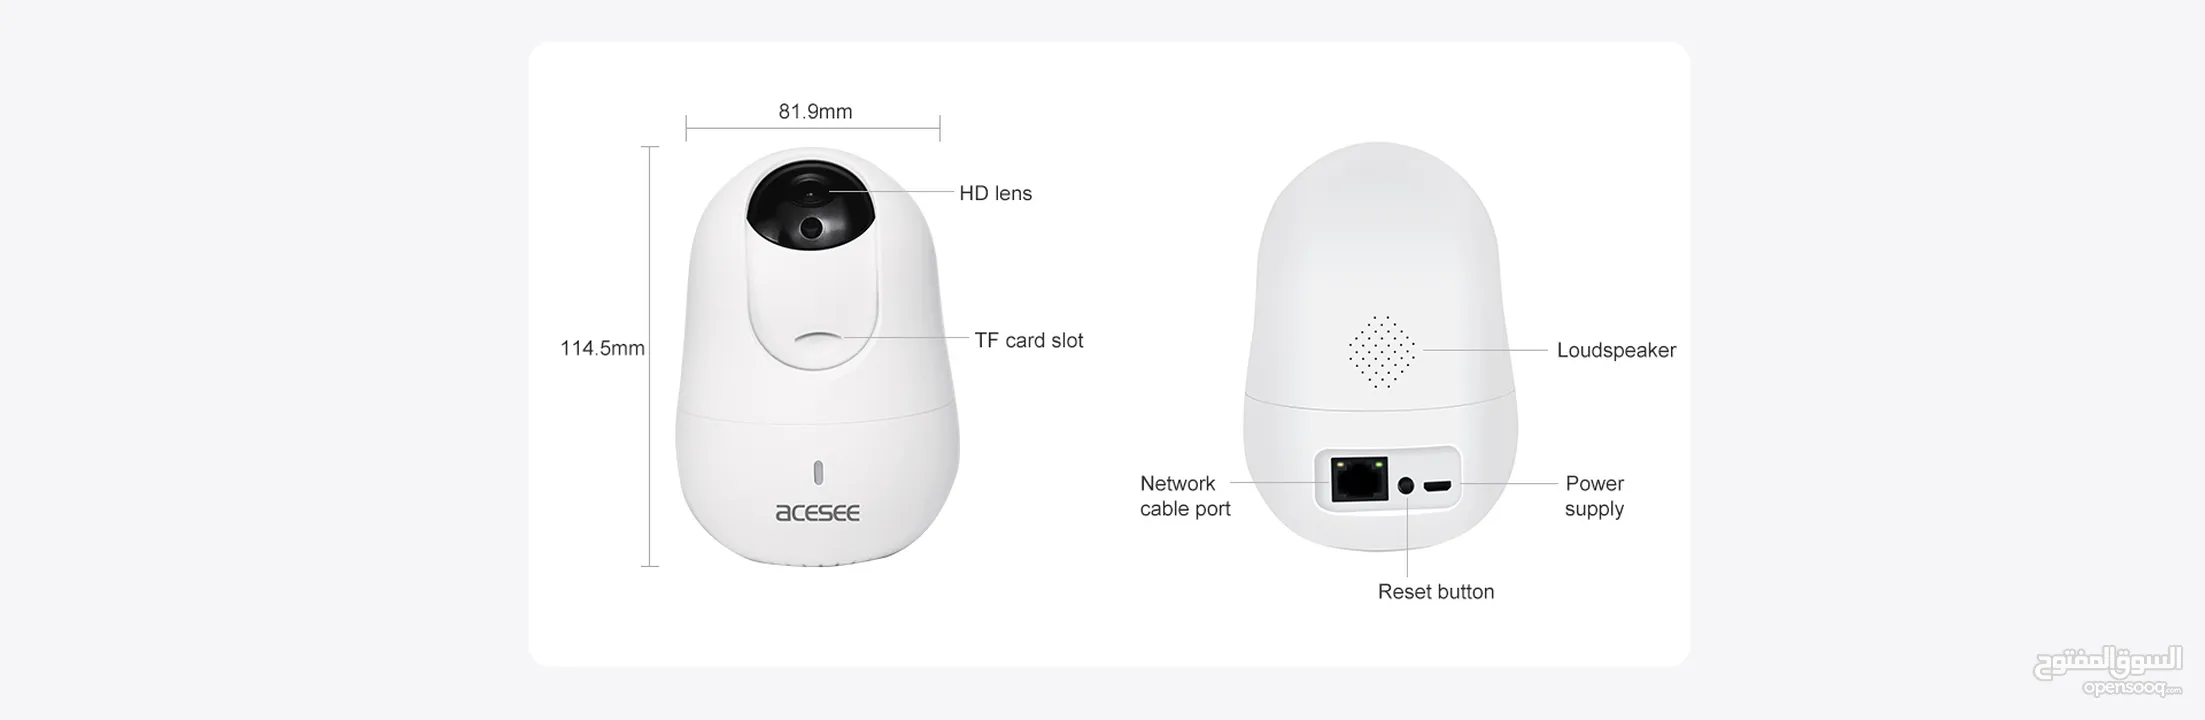 كاميرا مراقبة لاسلكي 5ميجا 5M for Home Security, Baby Monitor, Smart Indoor Security